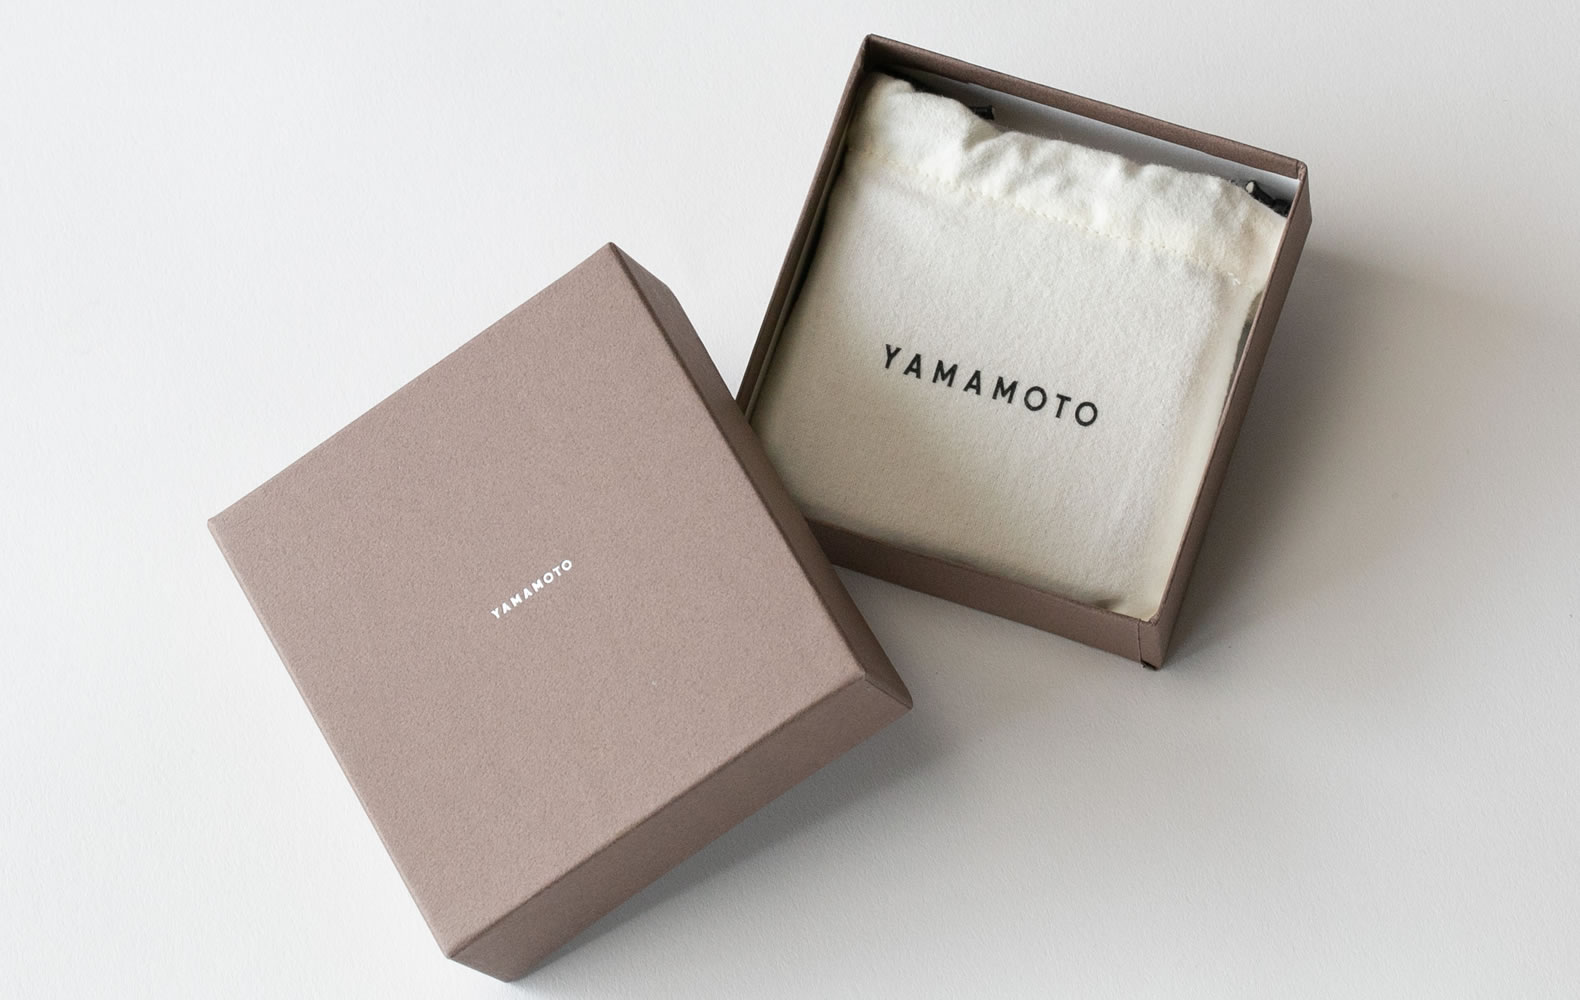 YAMAMOTOロゴが入った巾着とオリジナルボックス